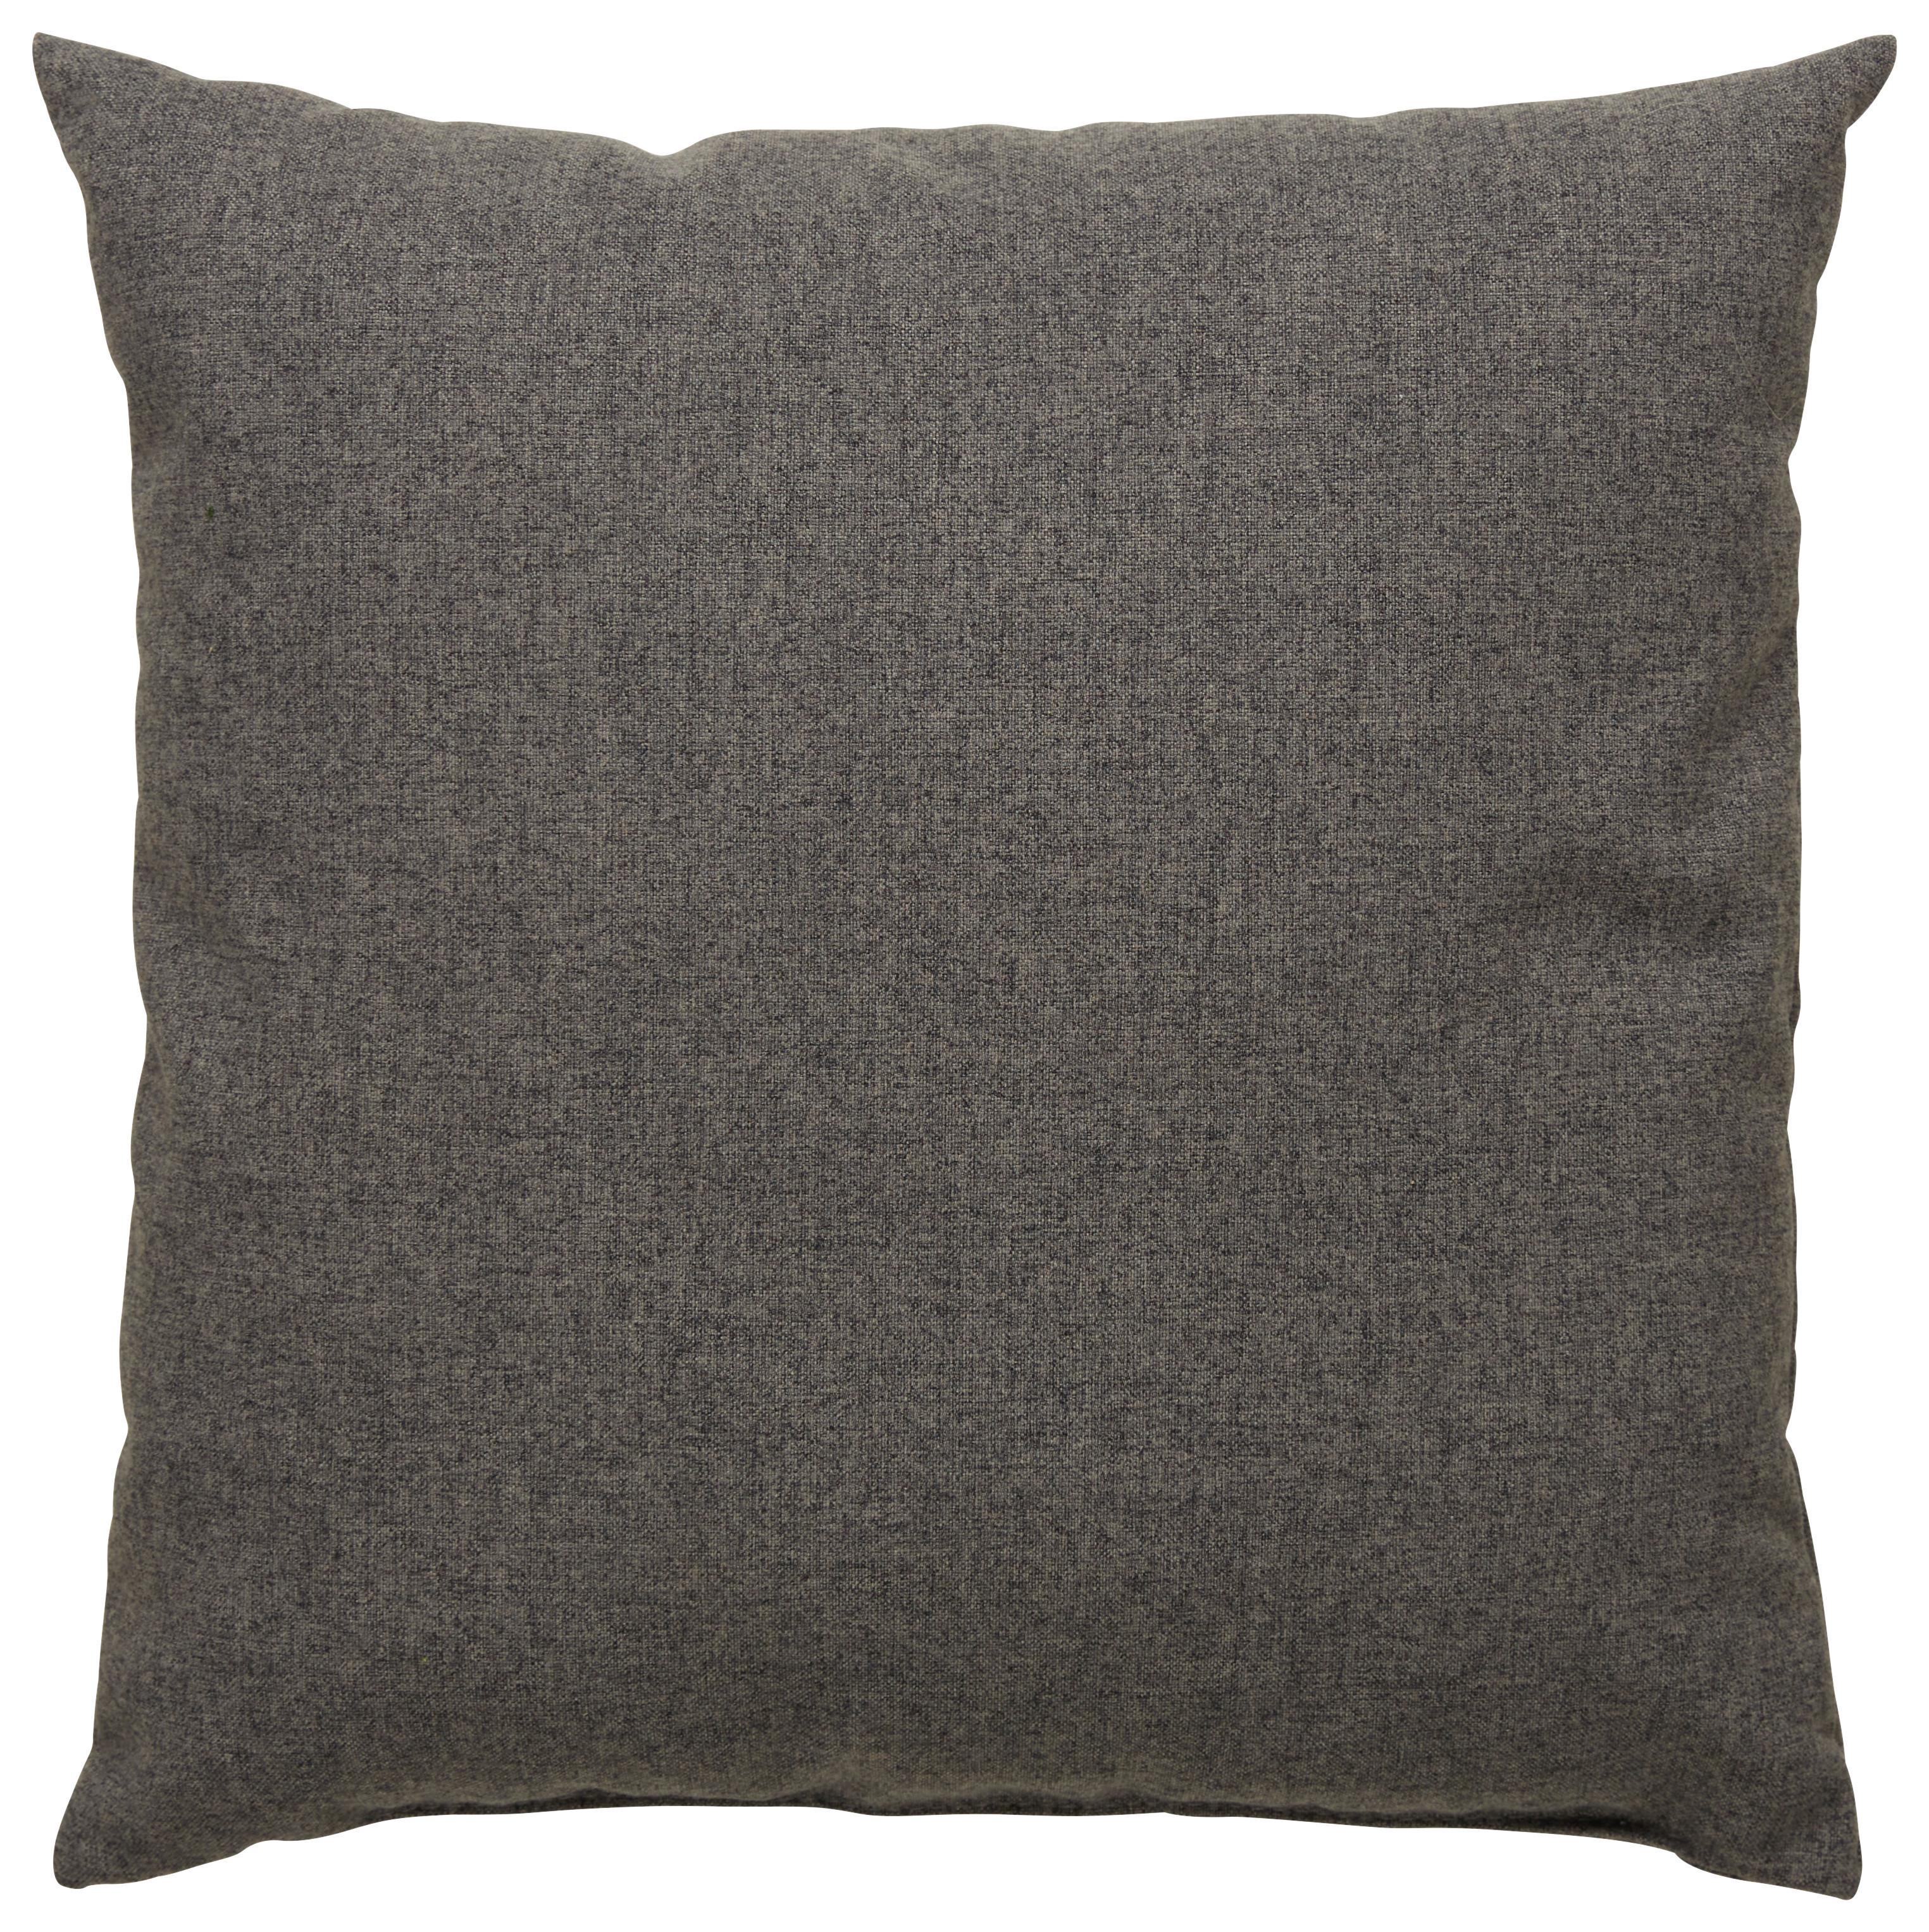 Zierkissen Nessie in Grau ca. 40x40cm - Grau, KONVENTIONELL, Textil (40/40cm) - Modern Living